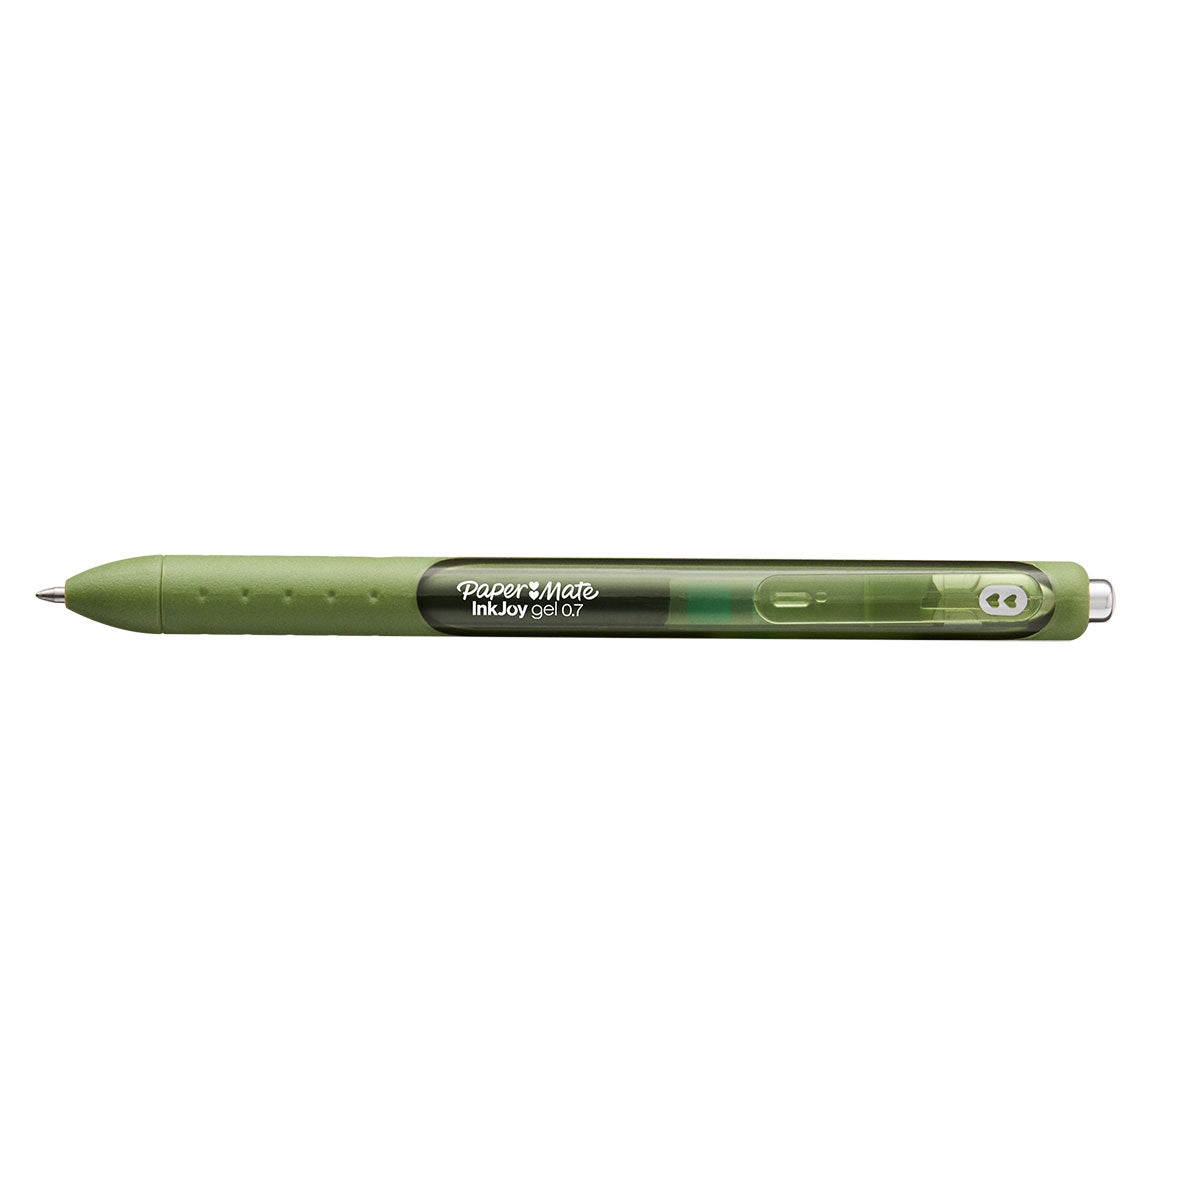 7 Metallic Gel Pens, 0.7 Mm Medium Tip, Point Yasutomo, Japanese Stationary  Gel Pens That Actually WORK on Black Paper 